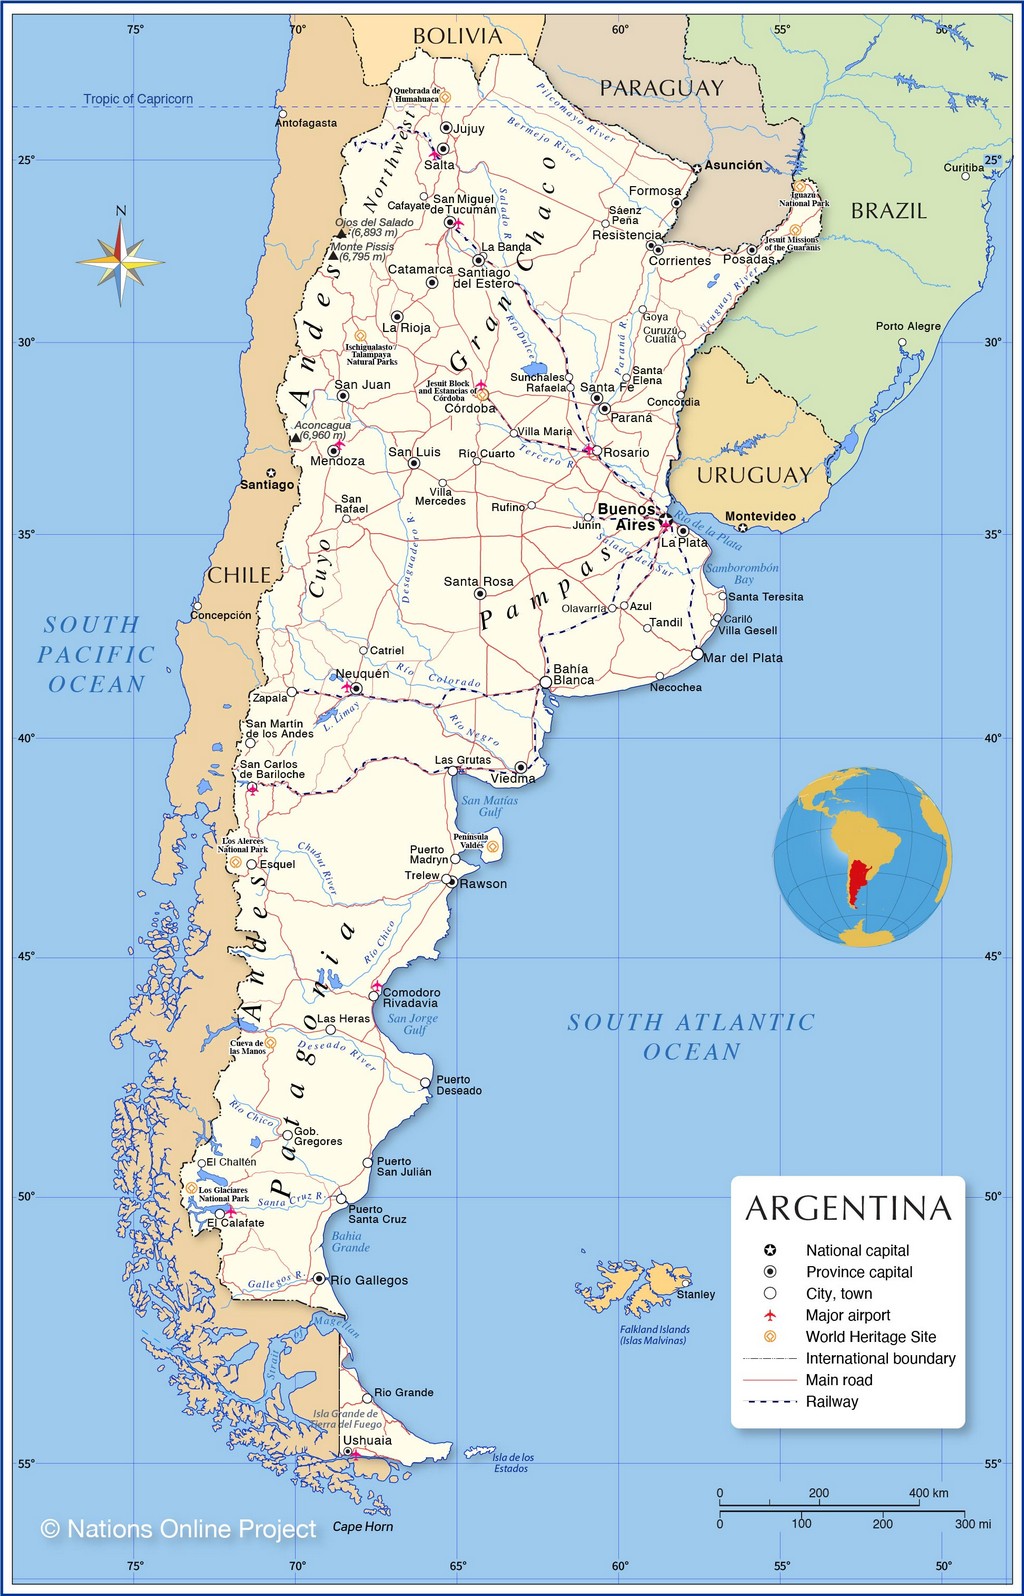 Bản đồ hành chính của Argentina, với các thành phố lớn, đường bộ, đường sắt, sân bay